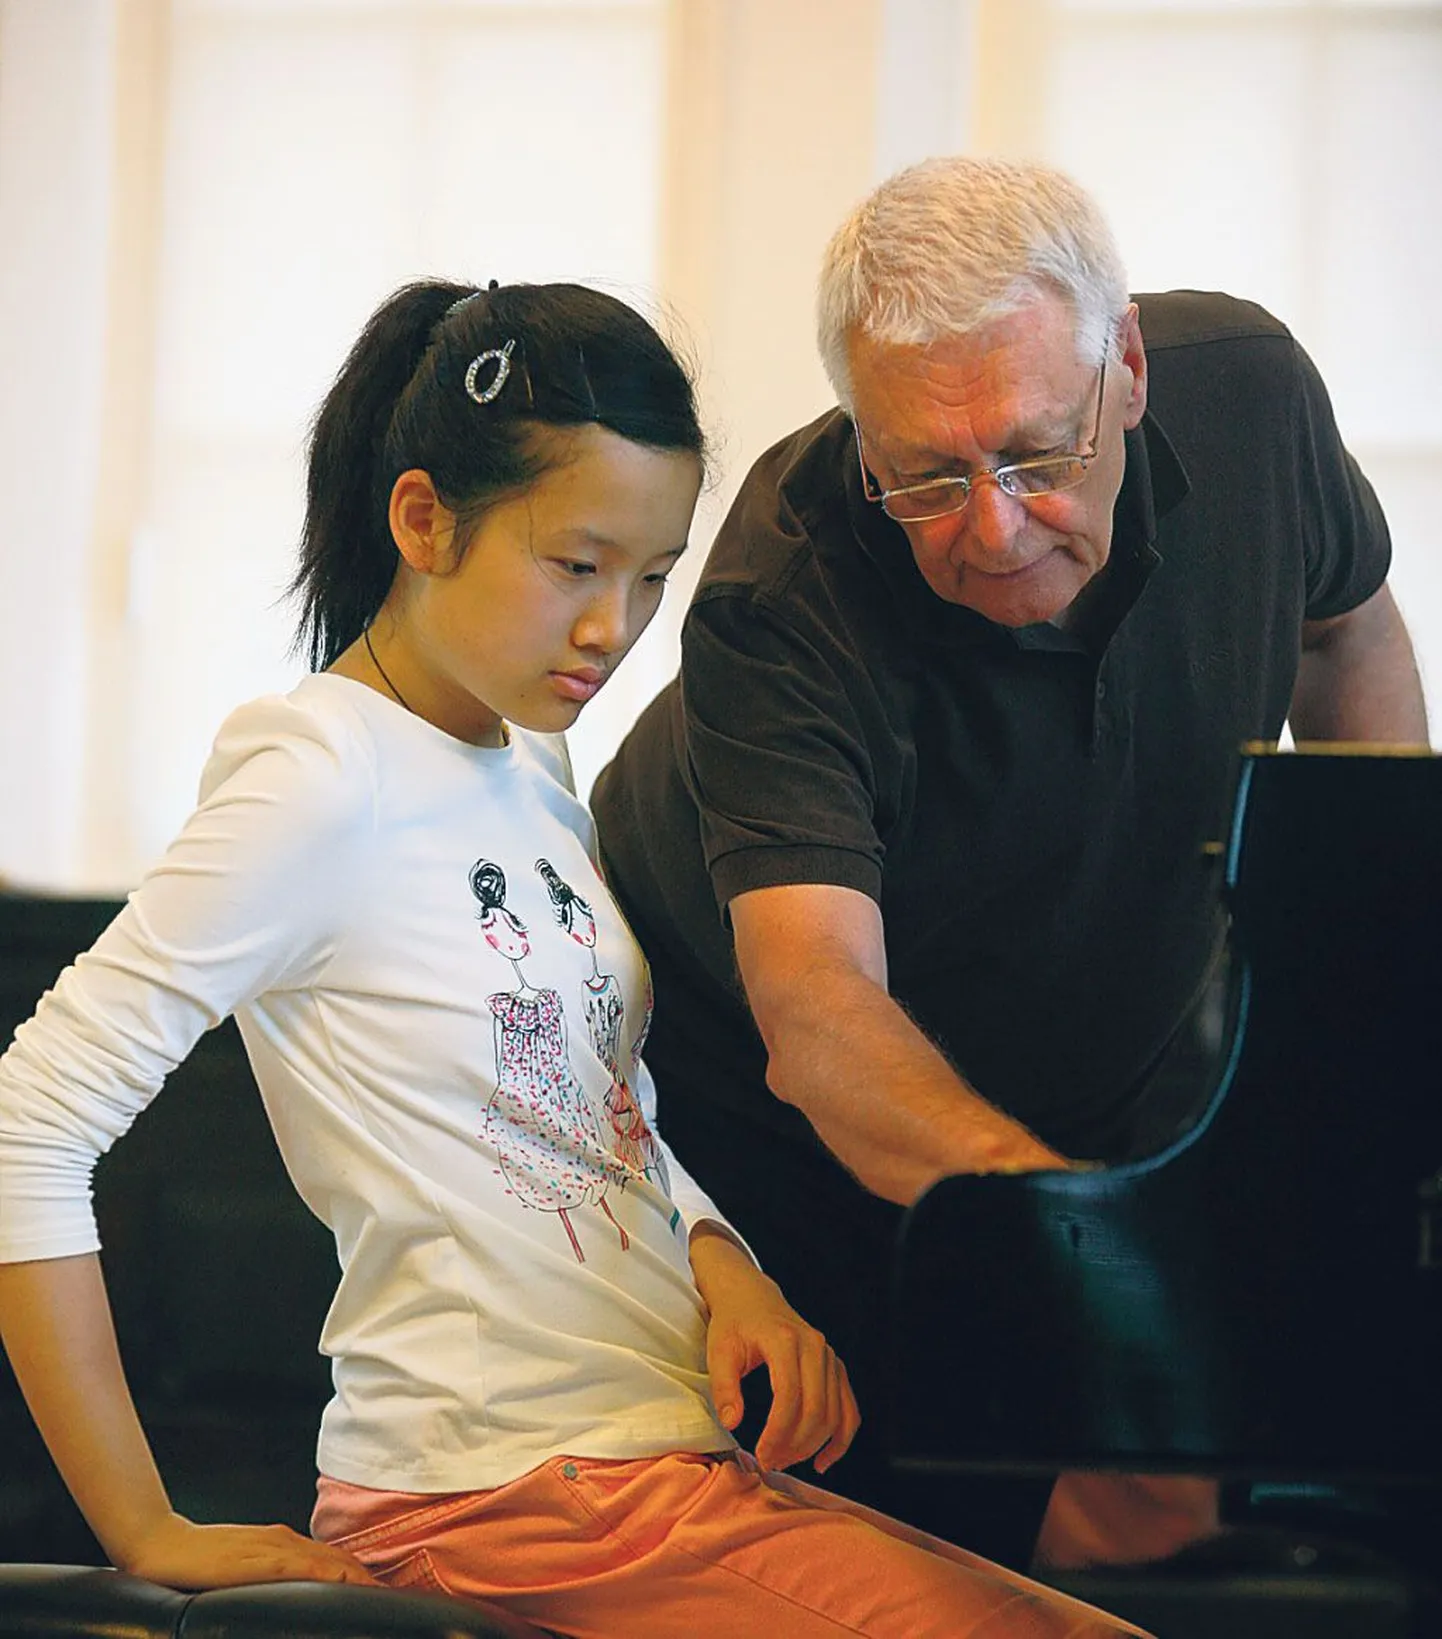 Hiinast pärit Jingfang Tan on võitnud auhindu klaverikonkurssidel Indoneesias, Prantsusmaal ja Saksamaal. Kaks viimast aastat õpib ta Viini muusikaülikooli eelkolledžis. Professor Arbo Valdma Pärnu meistrikursustel osaleb ta teist korda.